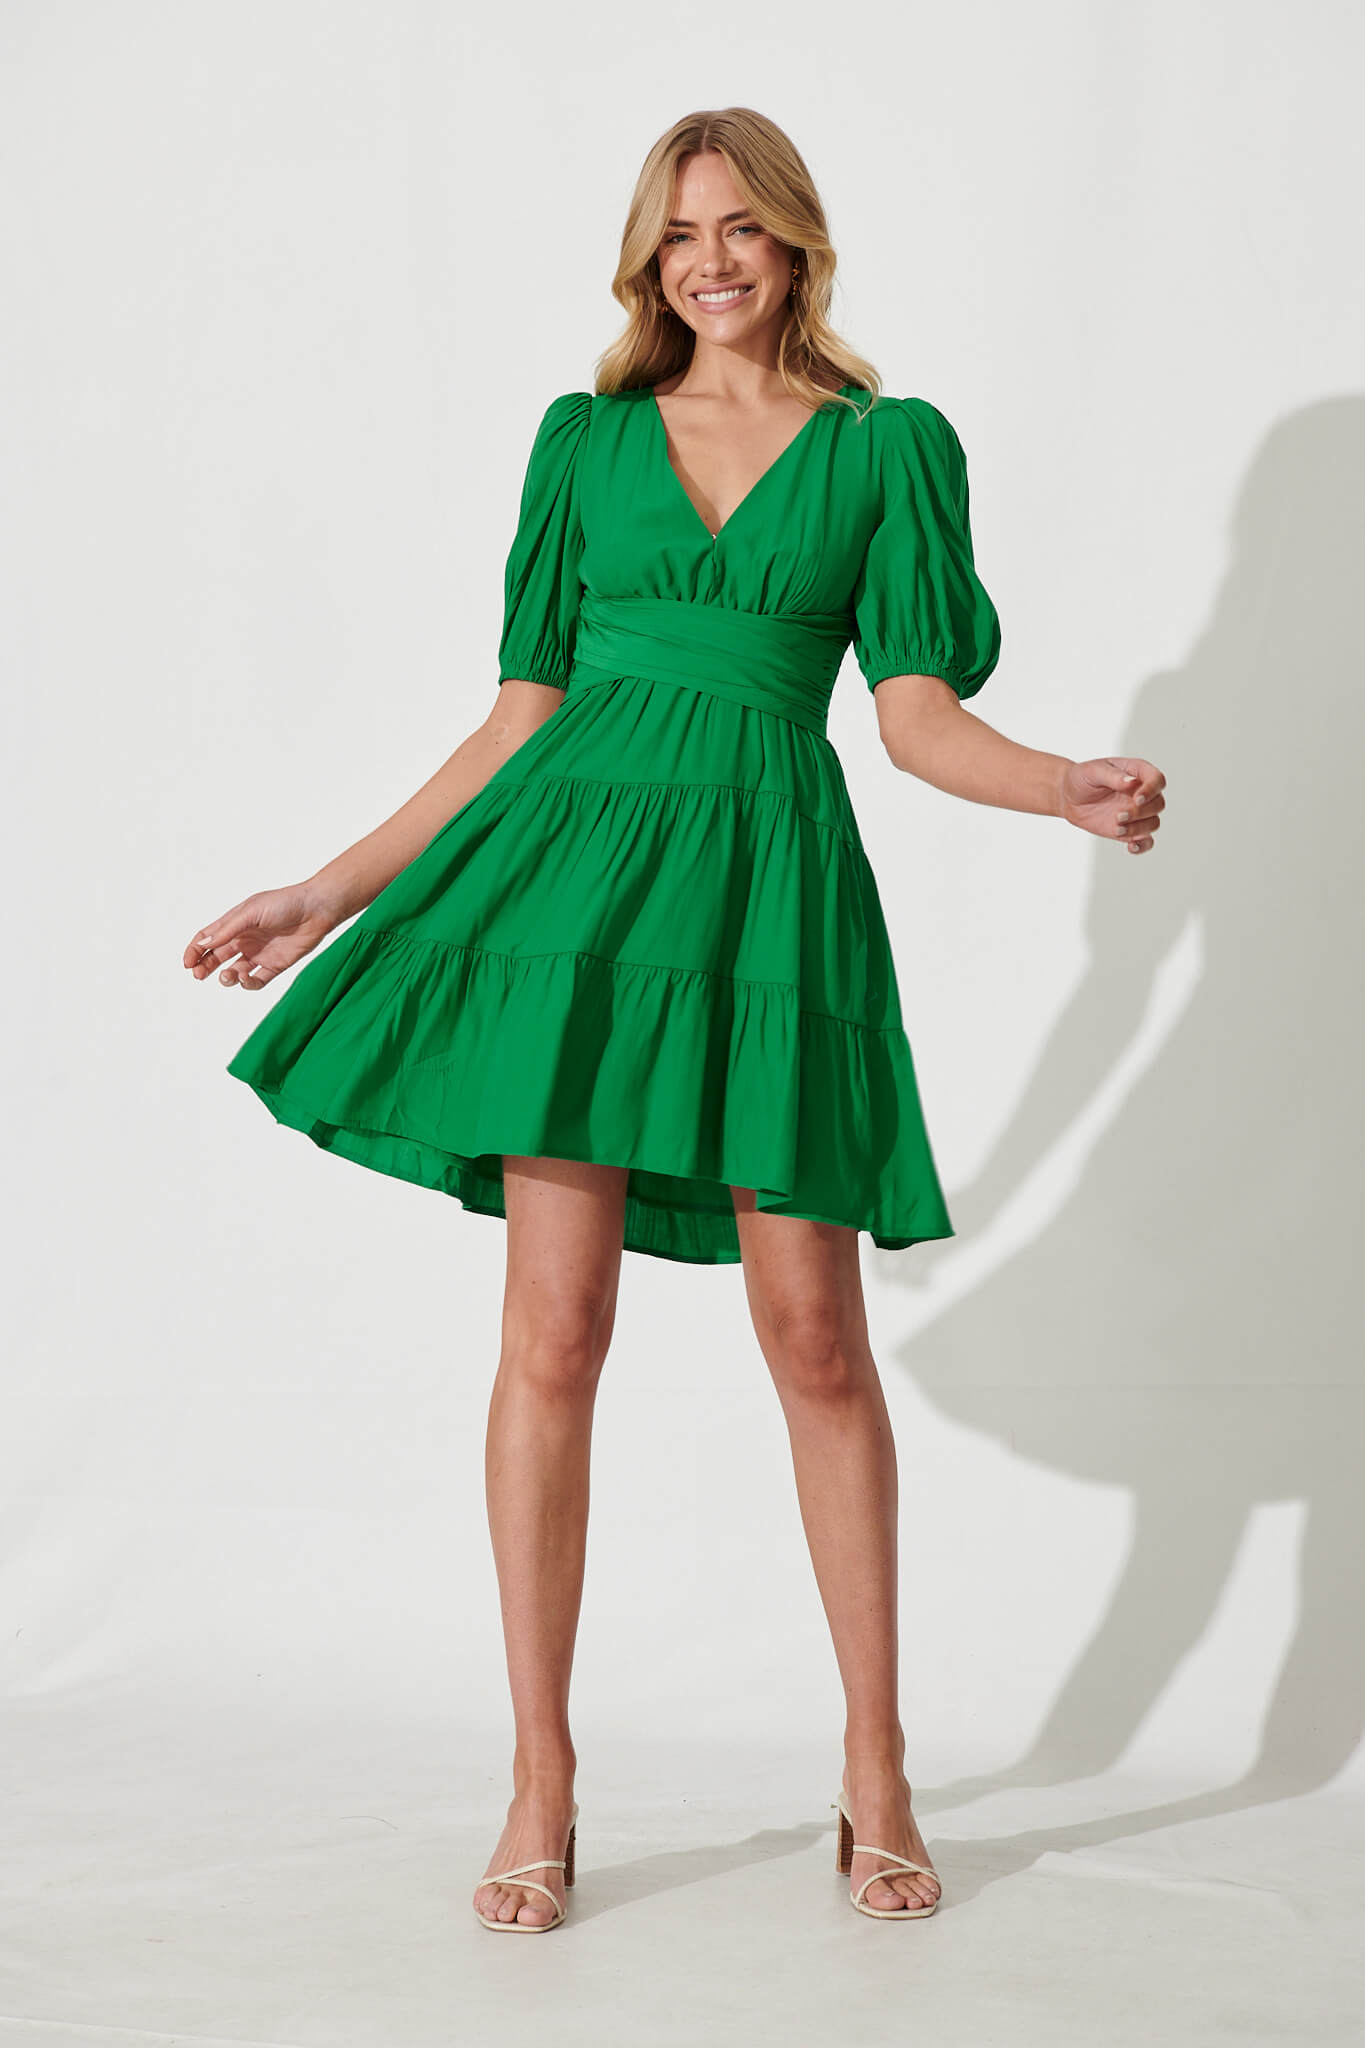 Lovely Dress In Green - full length